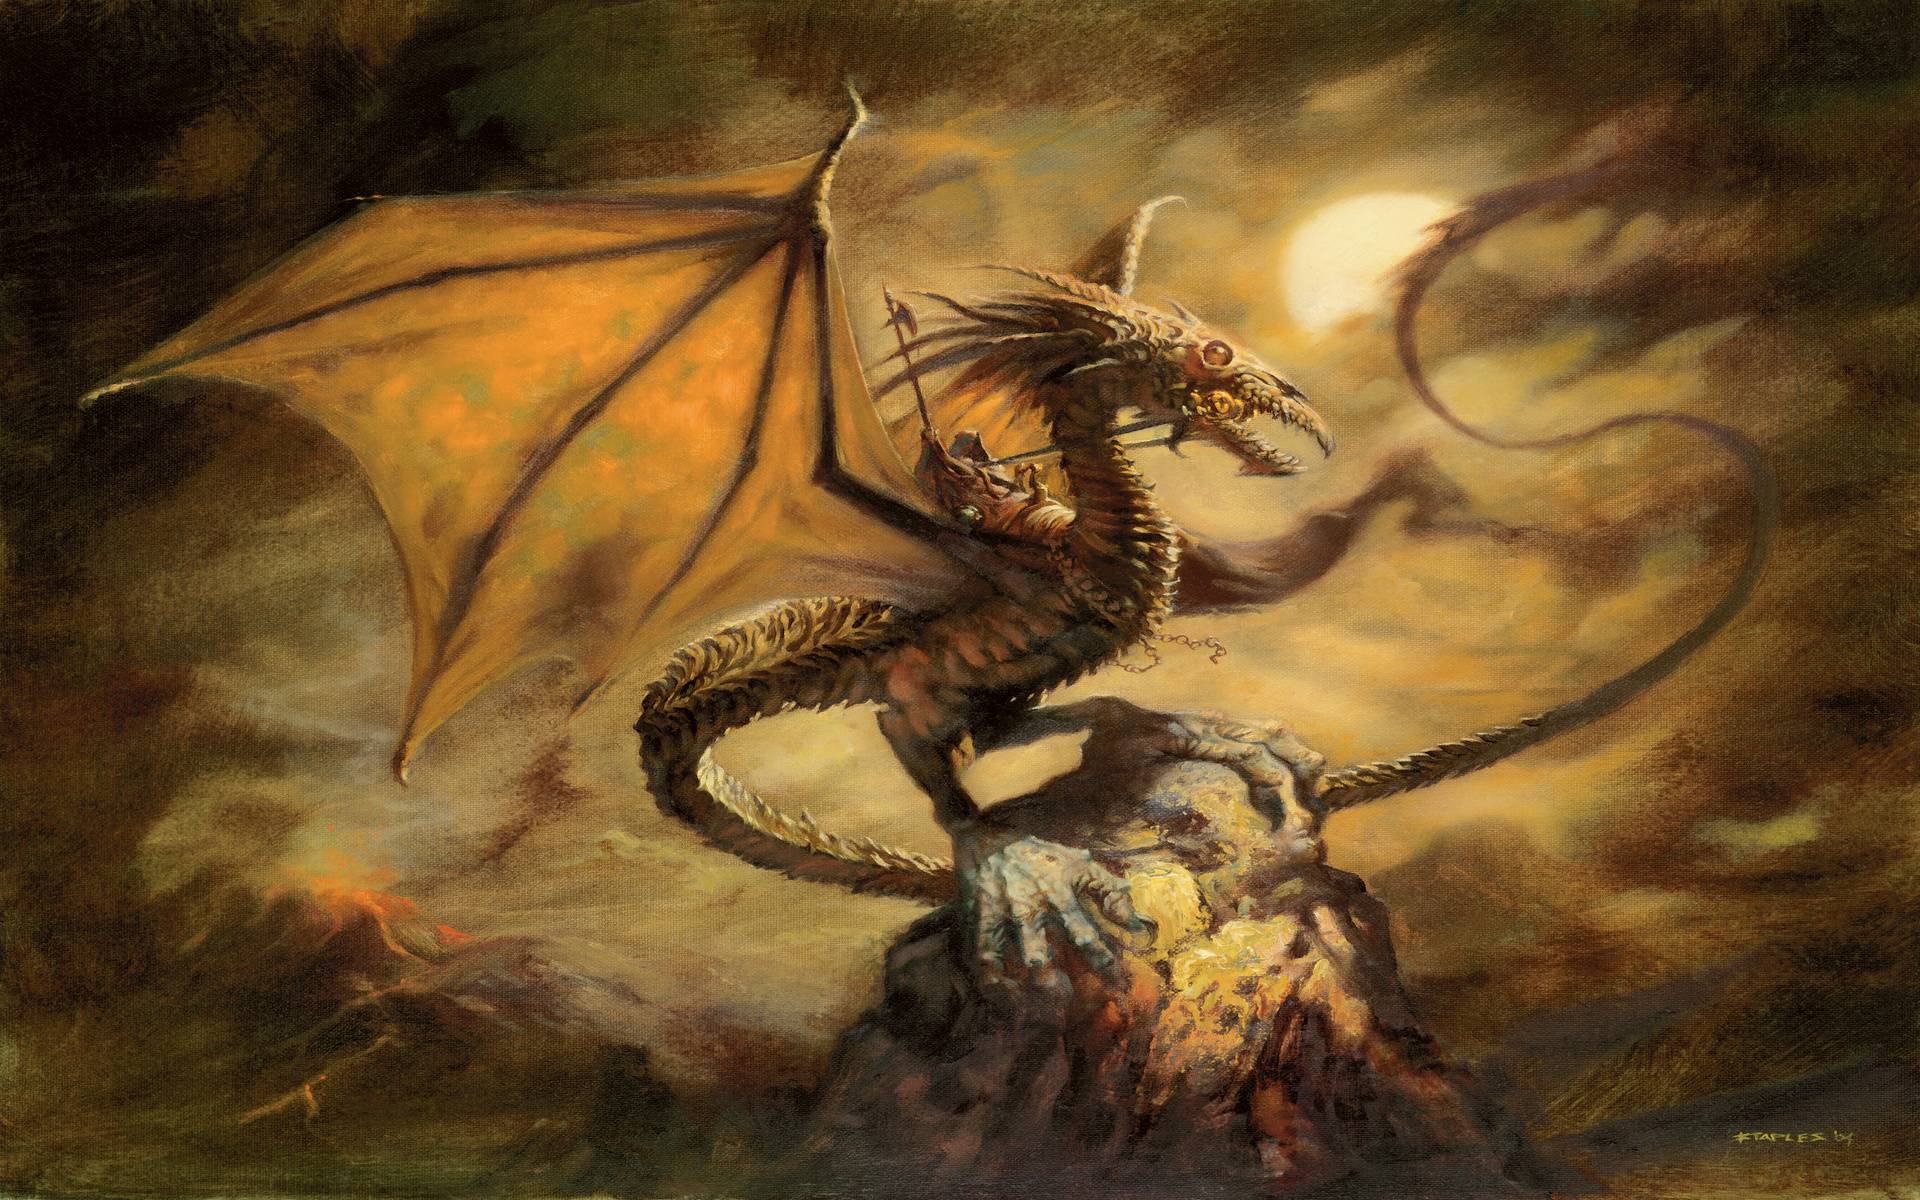 Dangerous Dragon Wallpaper, Dragon wallpaper & Background